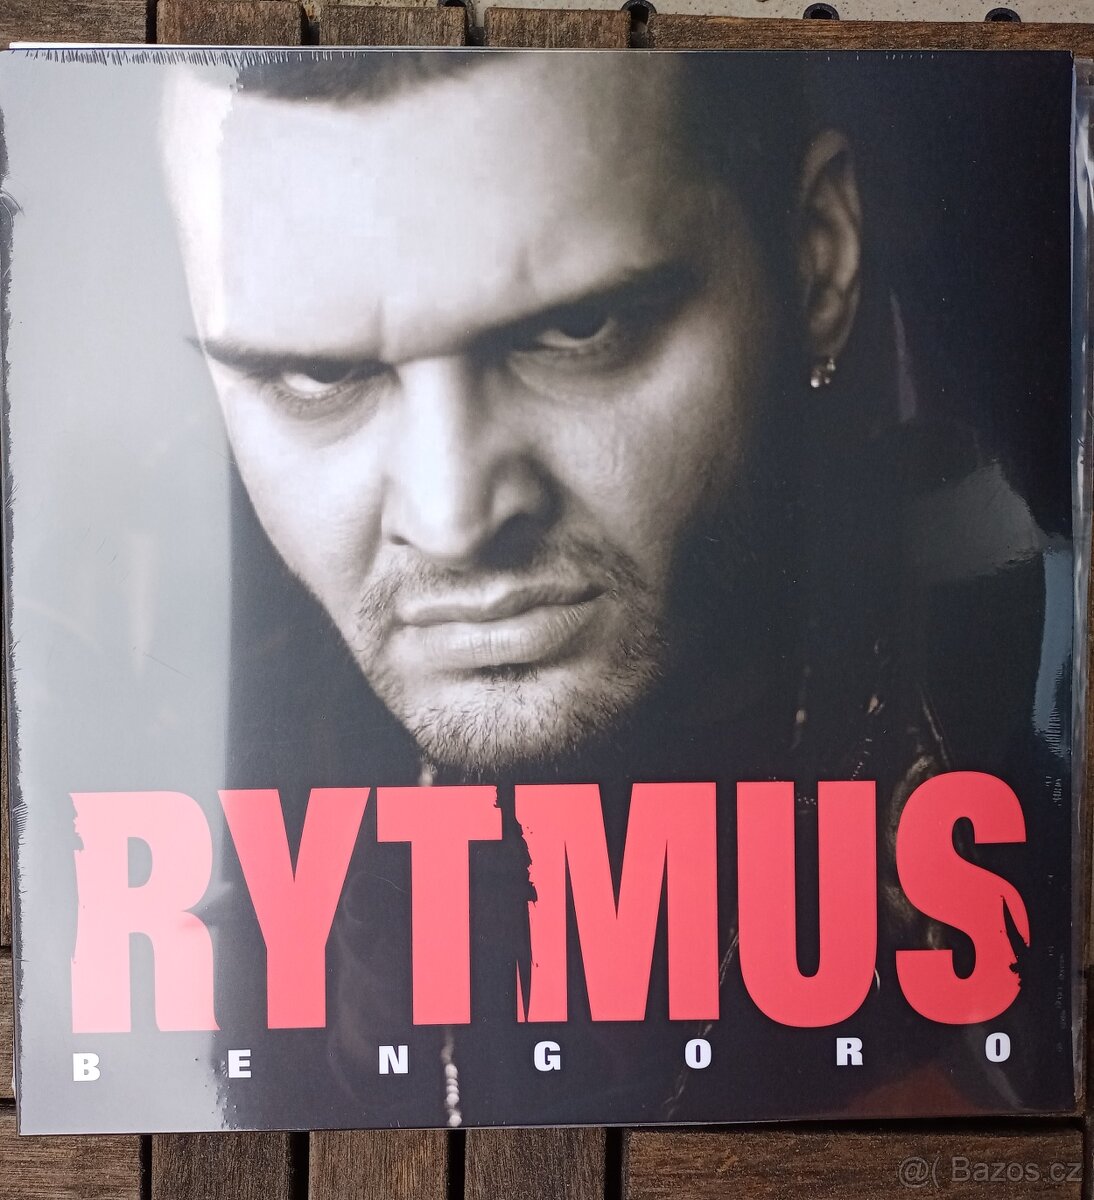 Rytmus - Bengoro 3 LP